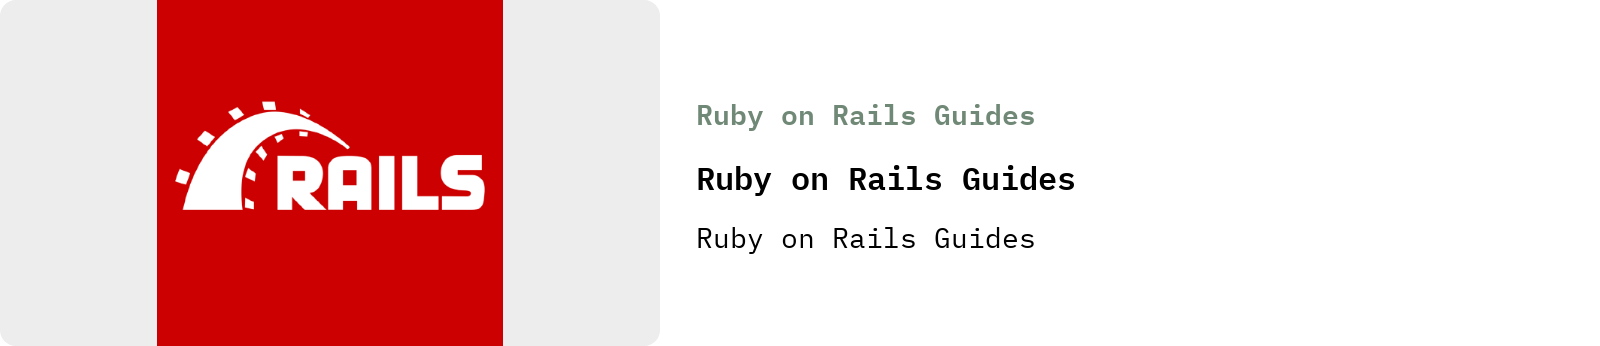 From Ruby on Rails Guides: Ruby on Rails Guides | Ruby on Rails Guides